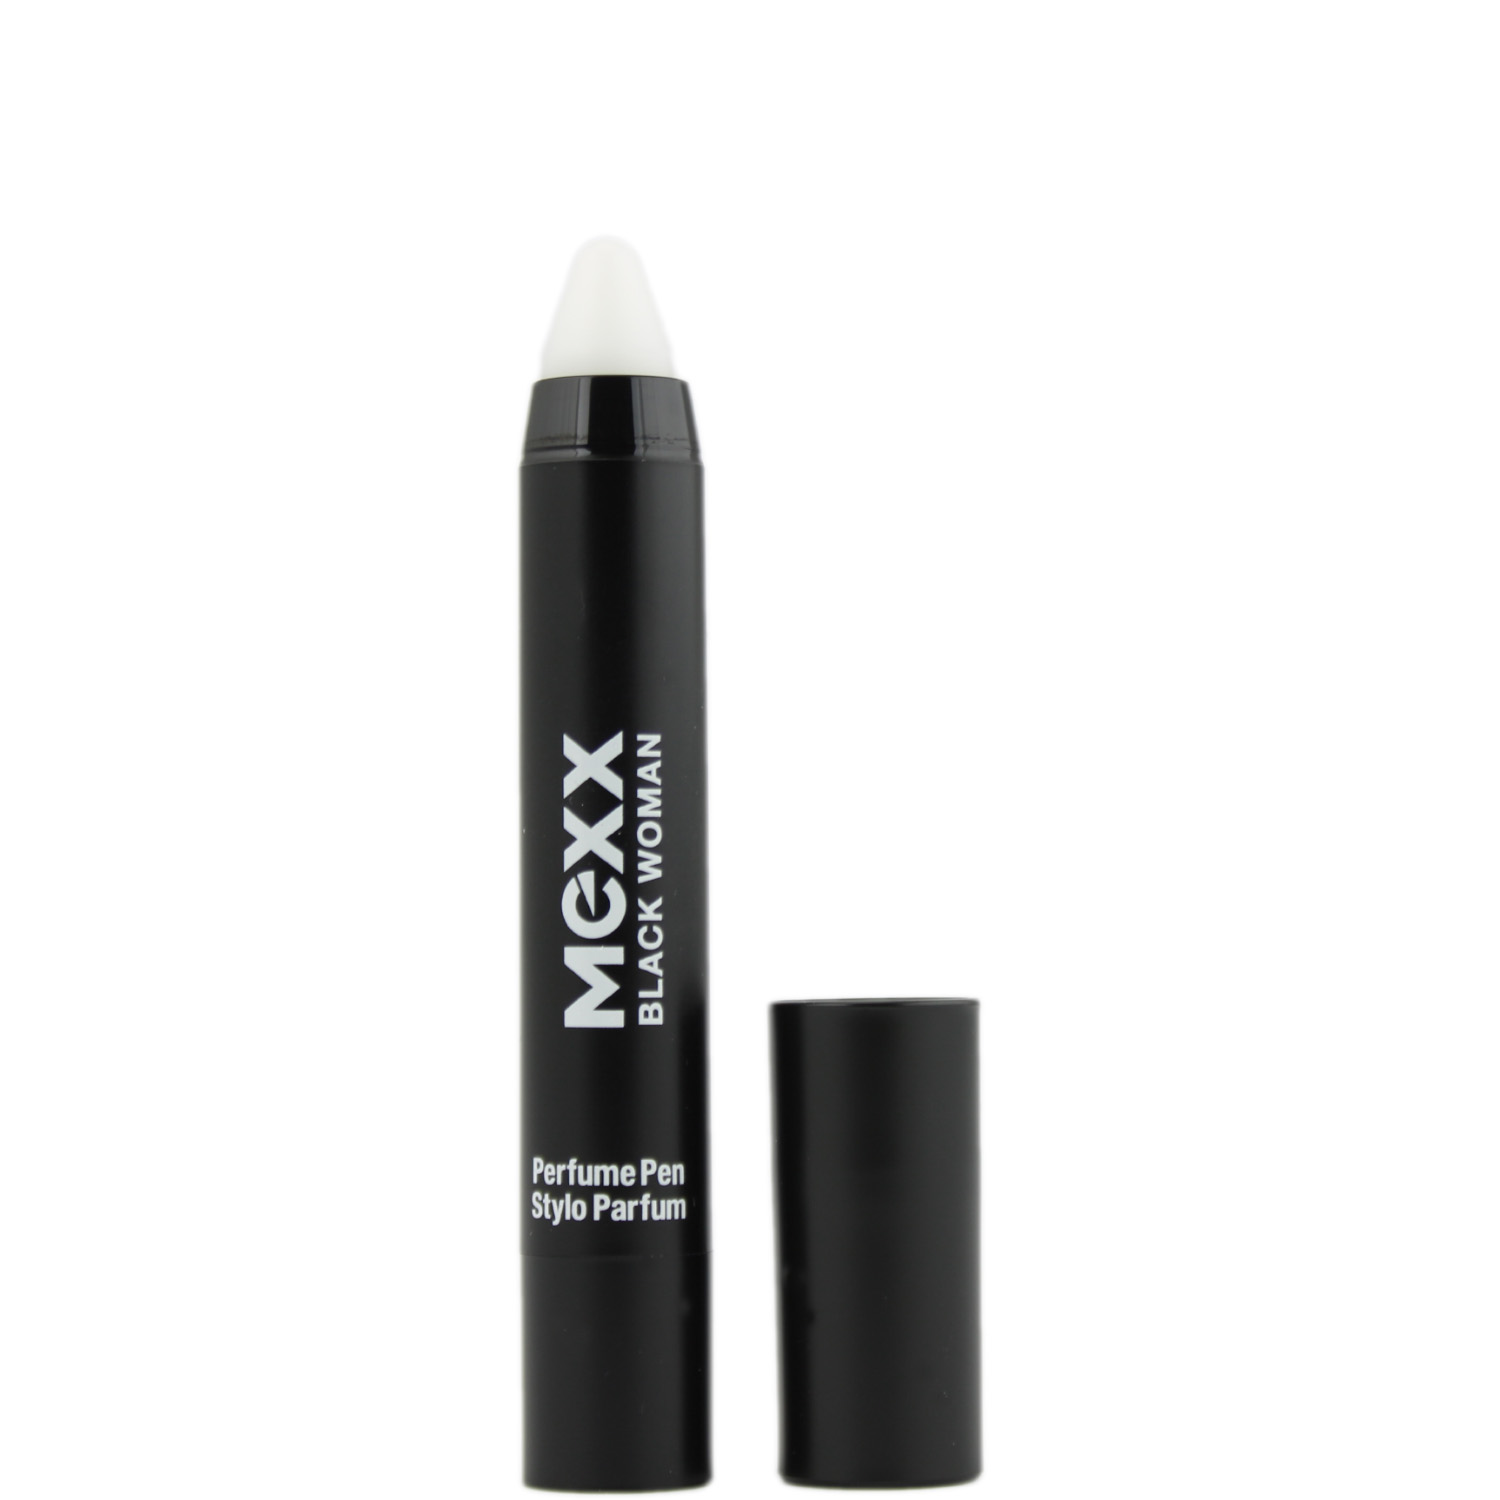 Mexx Black Woman Parfum Pen 3g